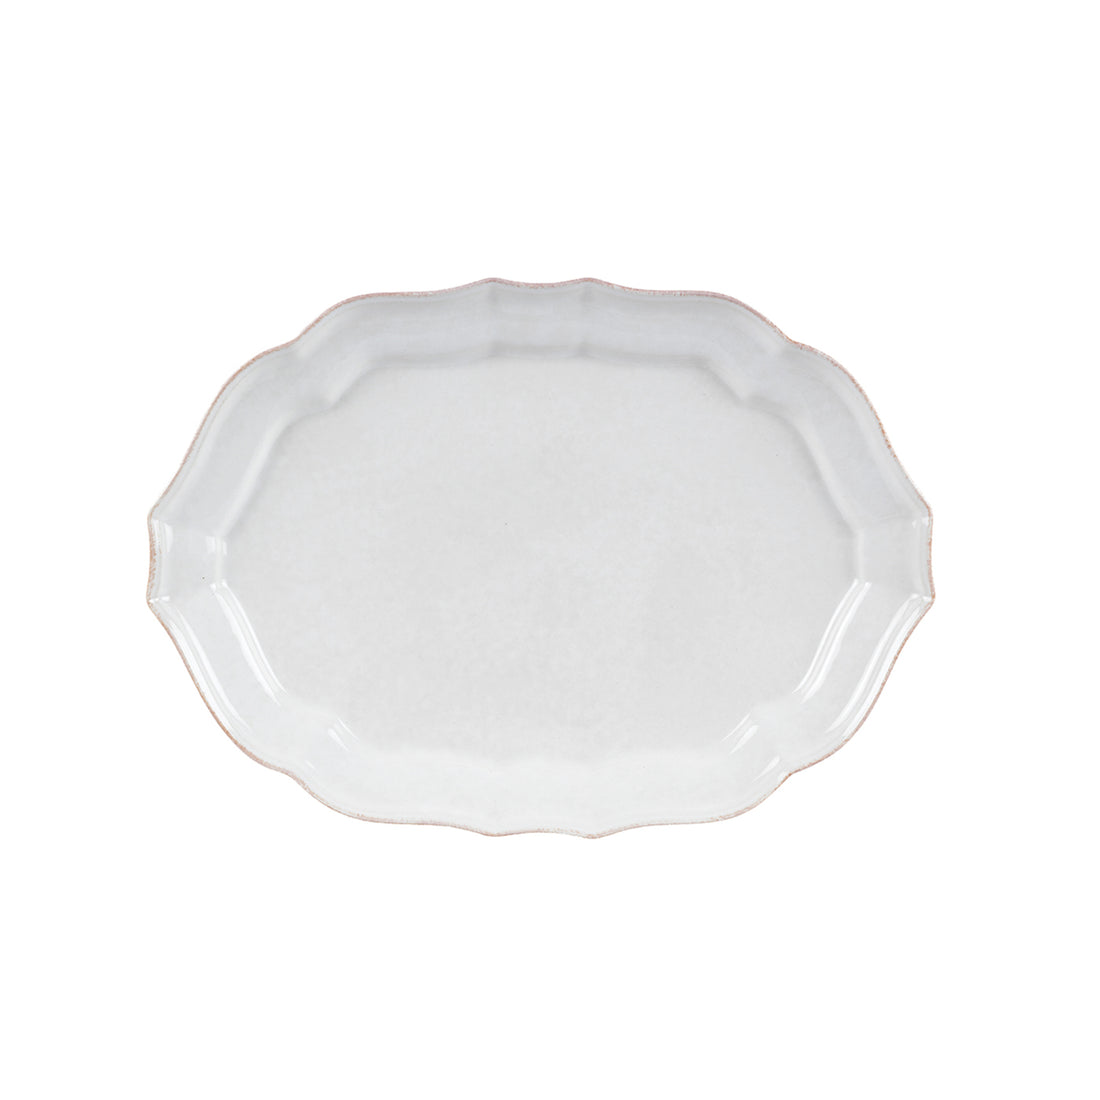 Casafina Impressions Medium Oval Platter